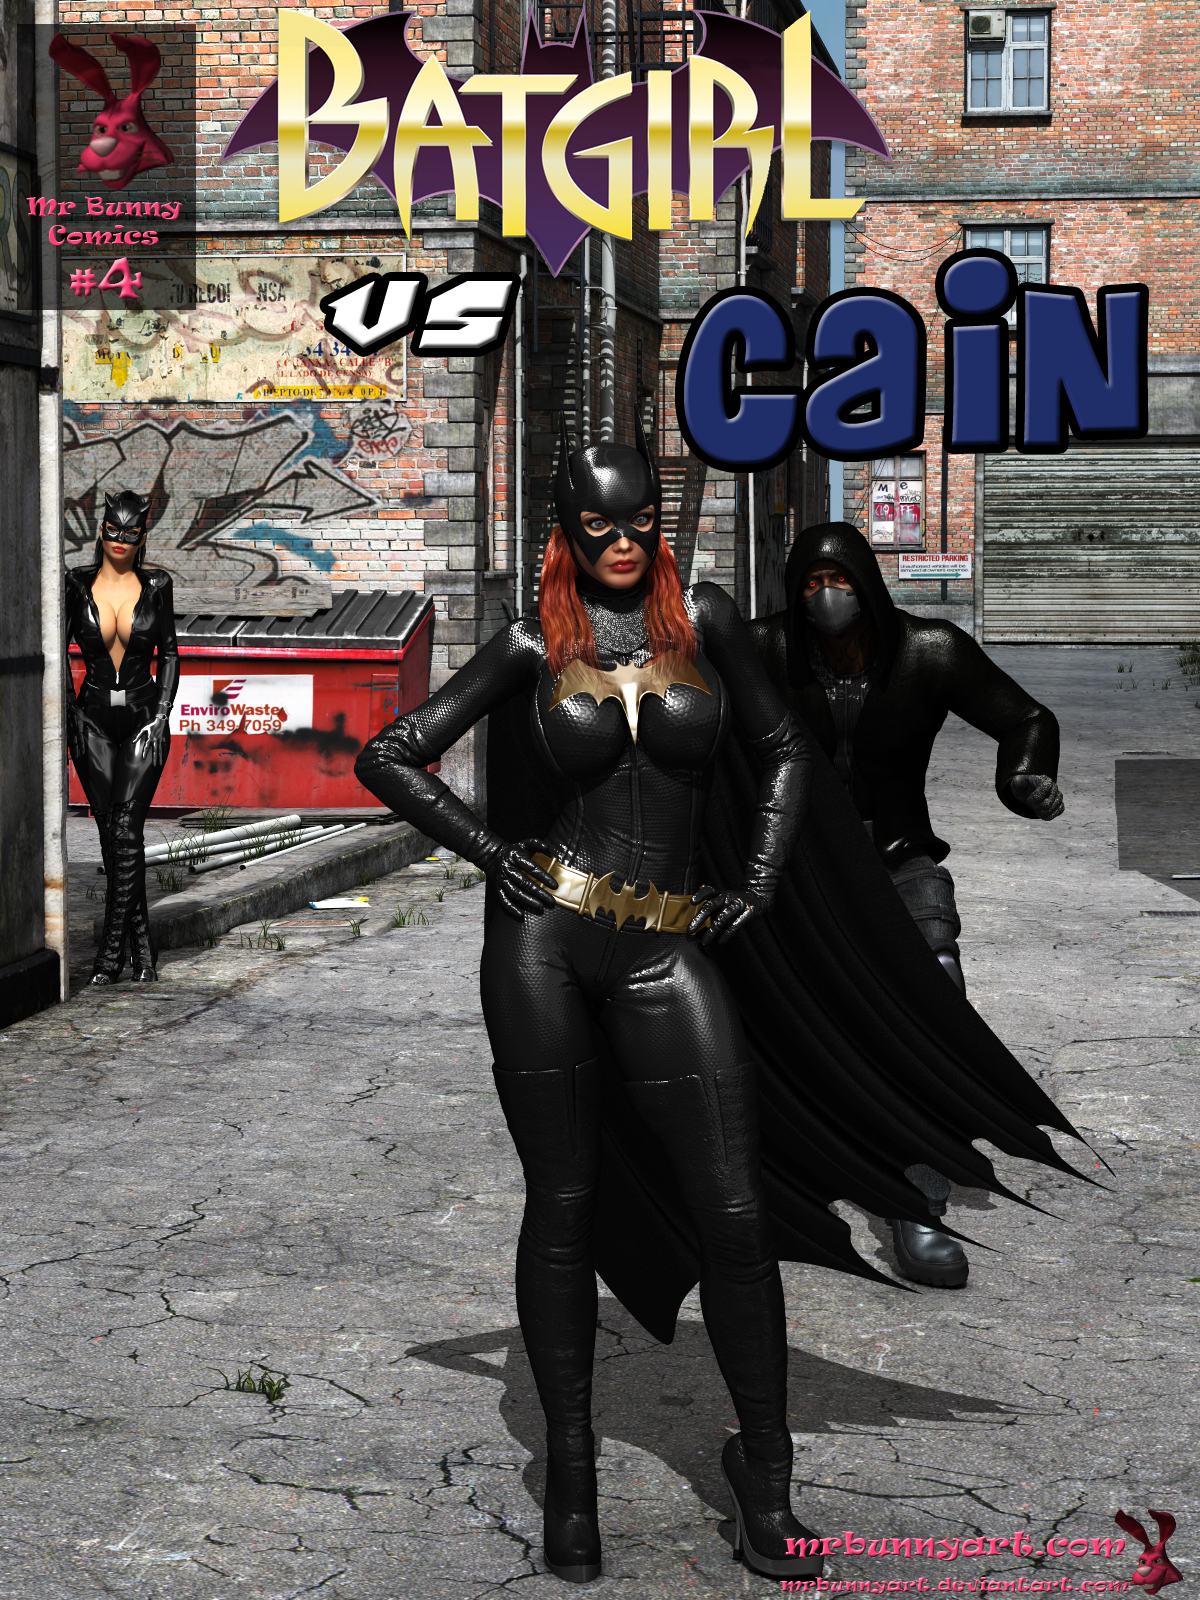 SureFap xxx porno Batman - [MrBunnyArt] - Comics #4 - Batgirl vs Cain